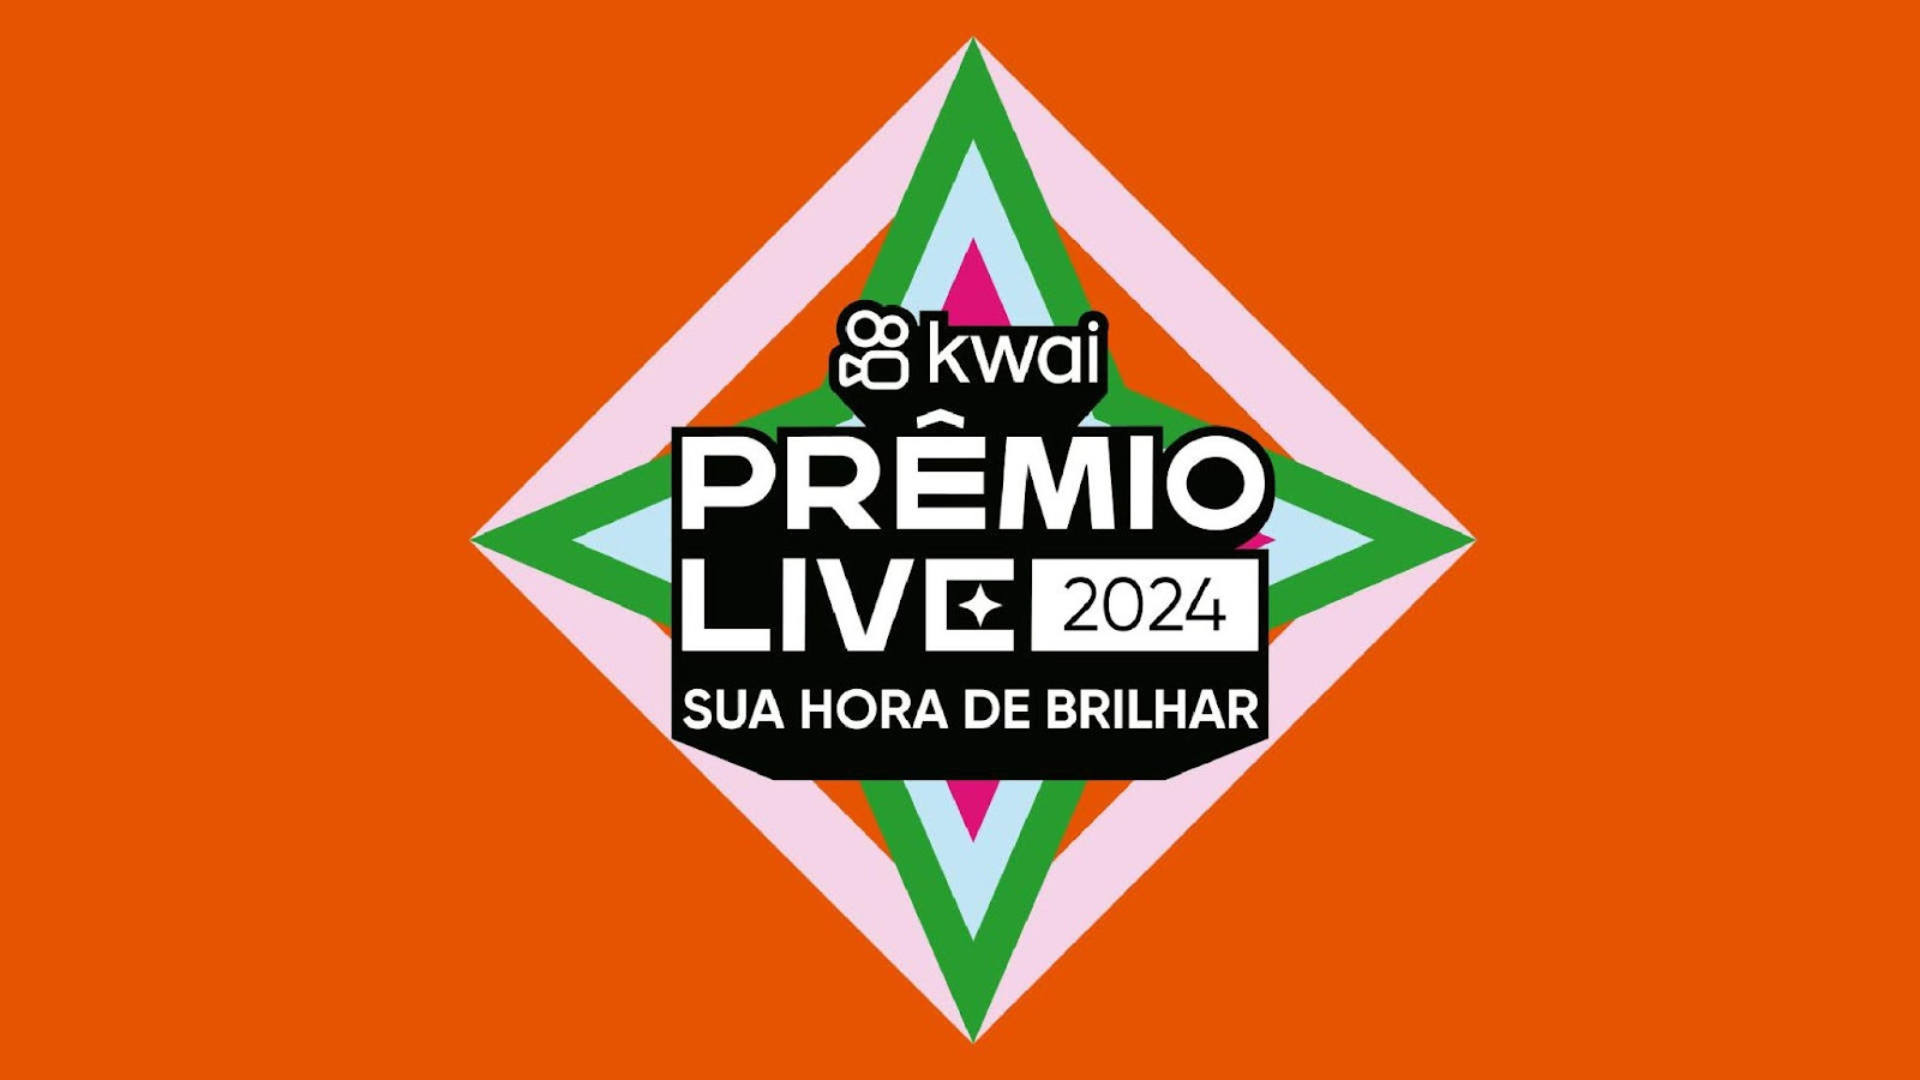 Kwai promove primeira edição do ‘Prêmio Live Kwai’ para criadores de live no Brasil